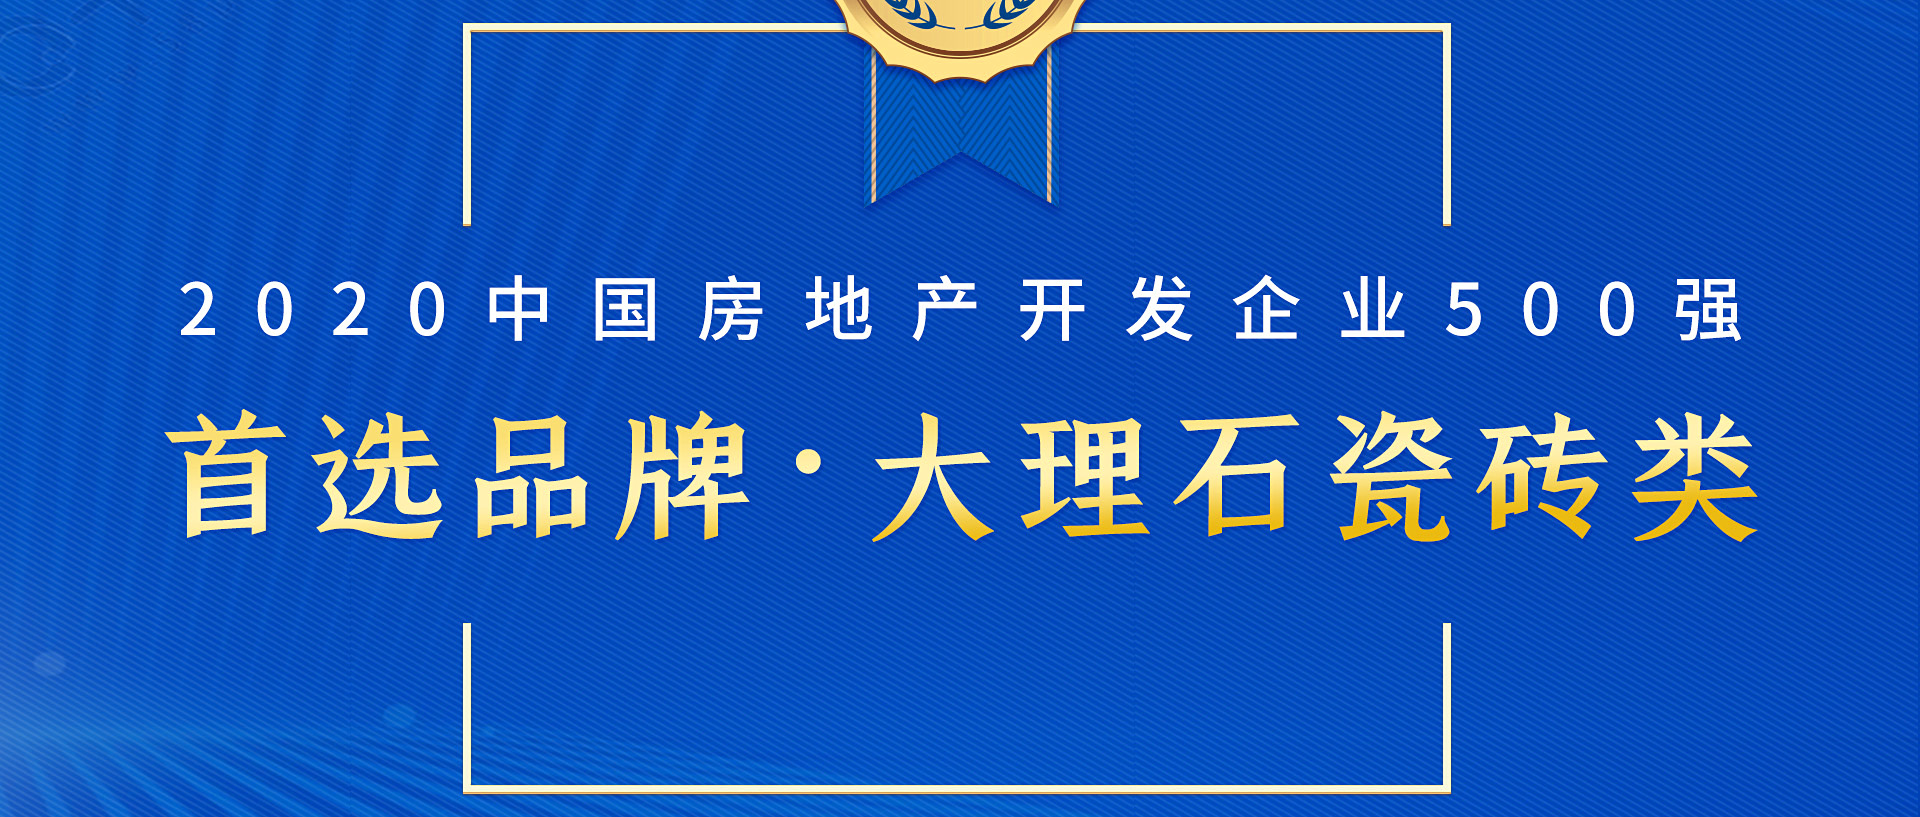 简一荣登中国房地产500强首选大理石瓷砖品牌榜首